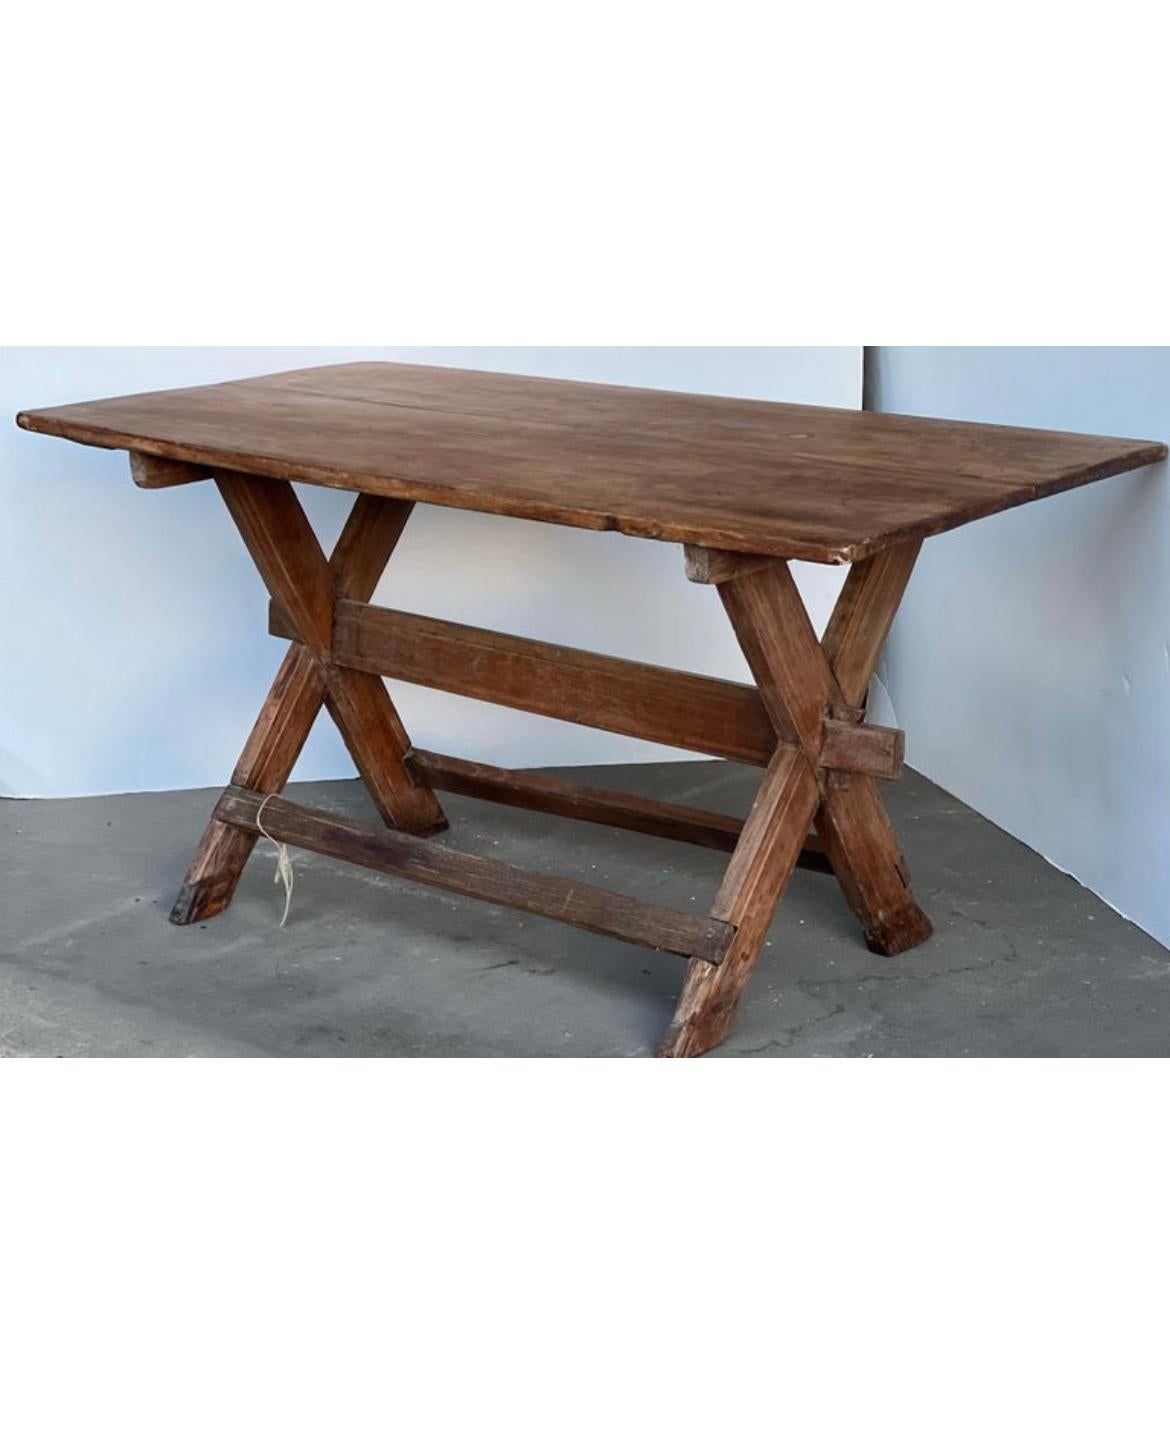 Voici une belle table à pieds croisés avec un châssis et une excellente patine et plus encore. Cette table est parfaite pour tout espace wabi sabi, traditionnel, farmhouse ou plus design. Parfait pour une table console, un bureau ou un petit coin